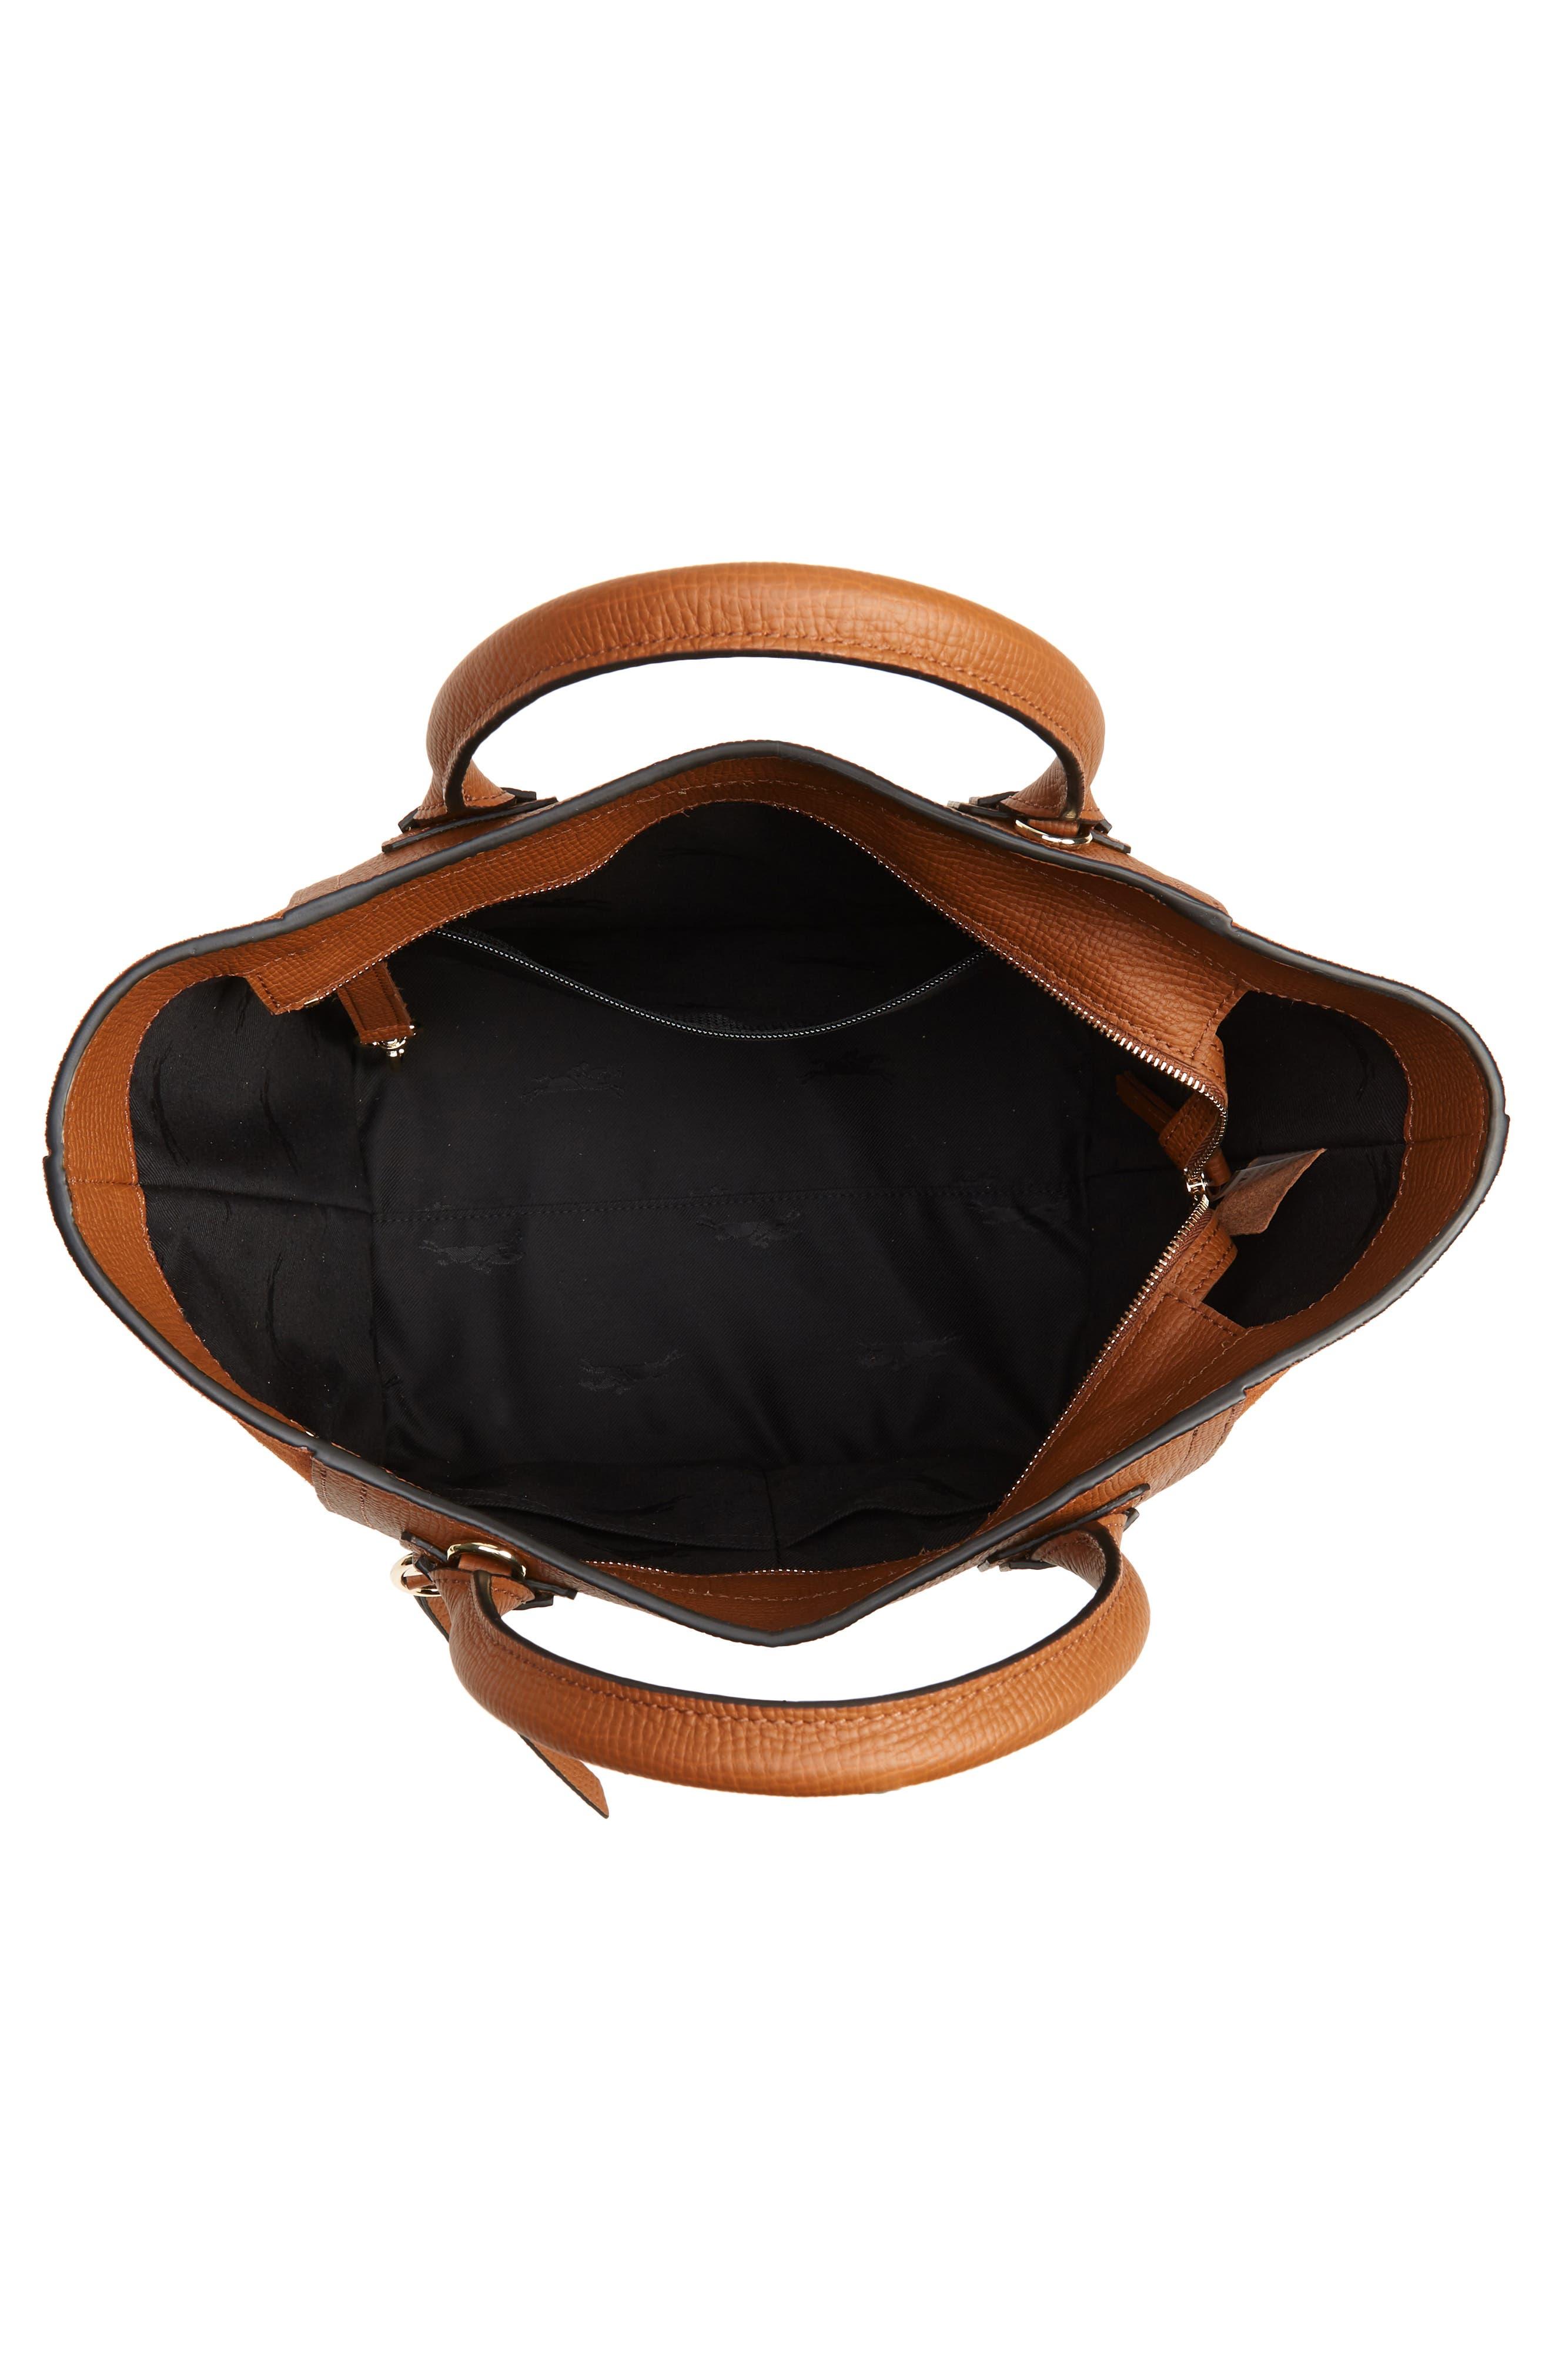 LONGCHAMP Unisex Cognac Brown Tan Leather Top Handle Shoulder Briefcase  FRANCE